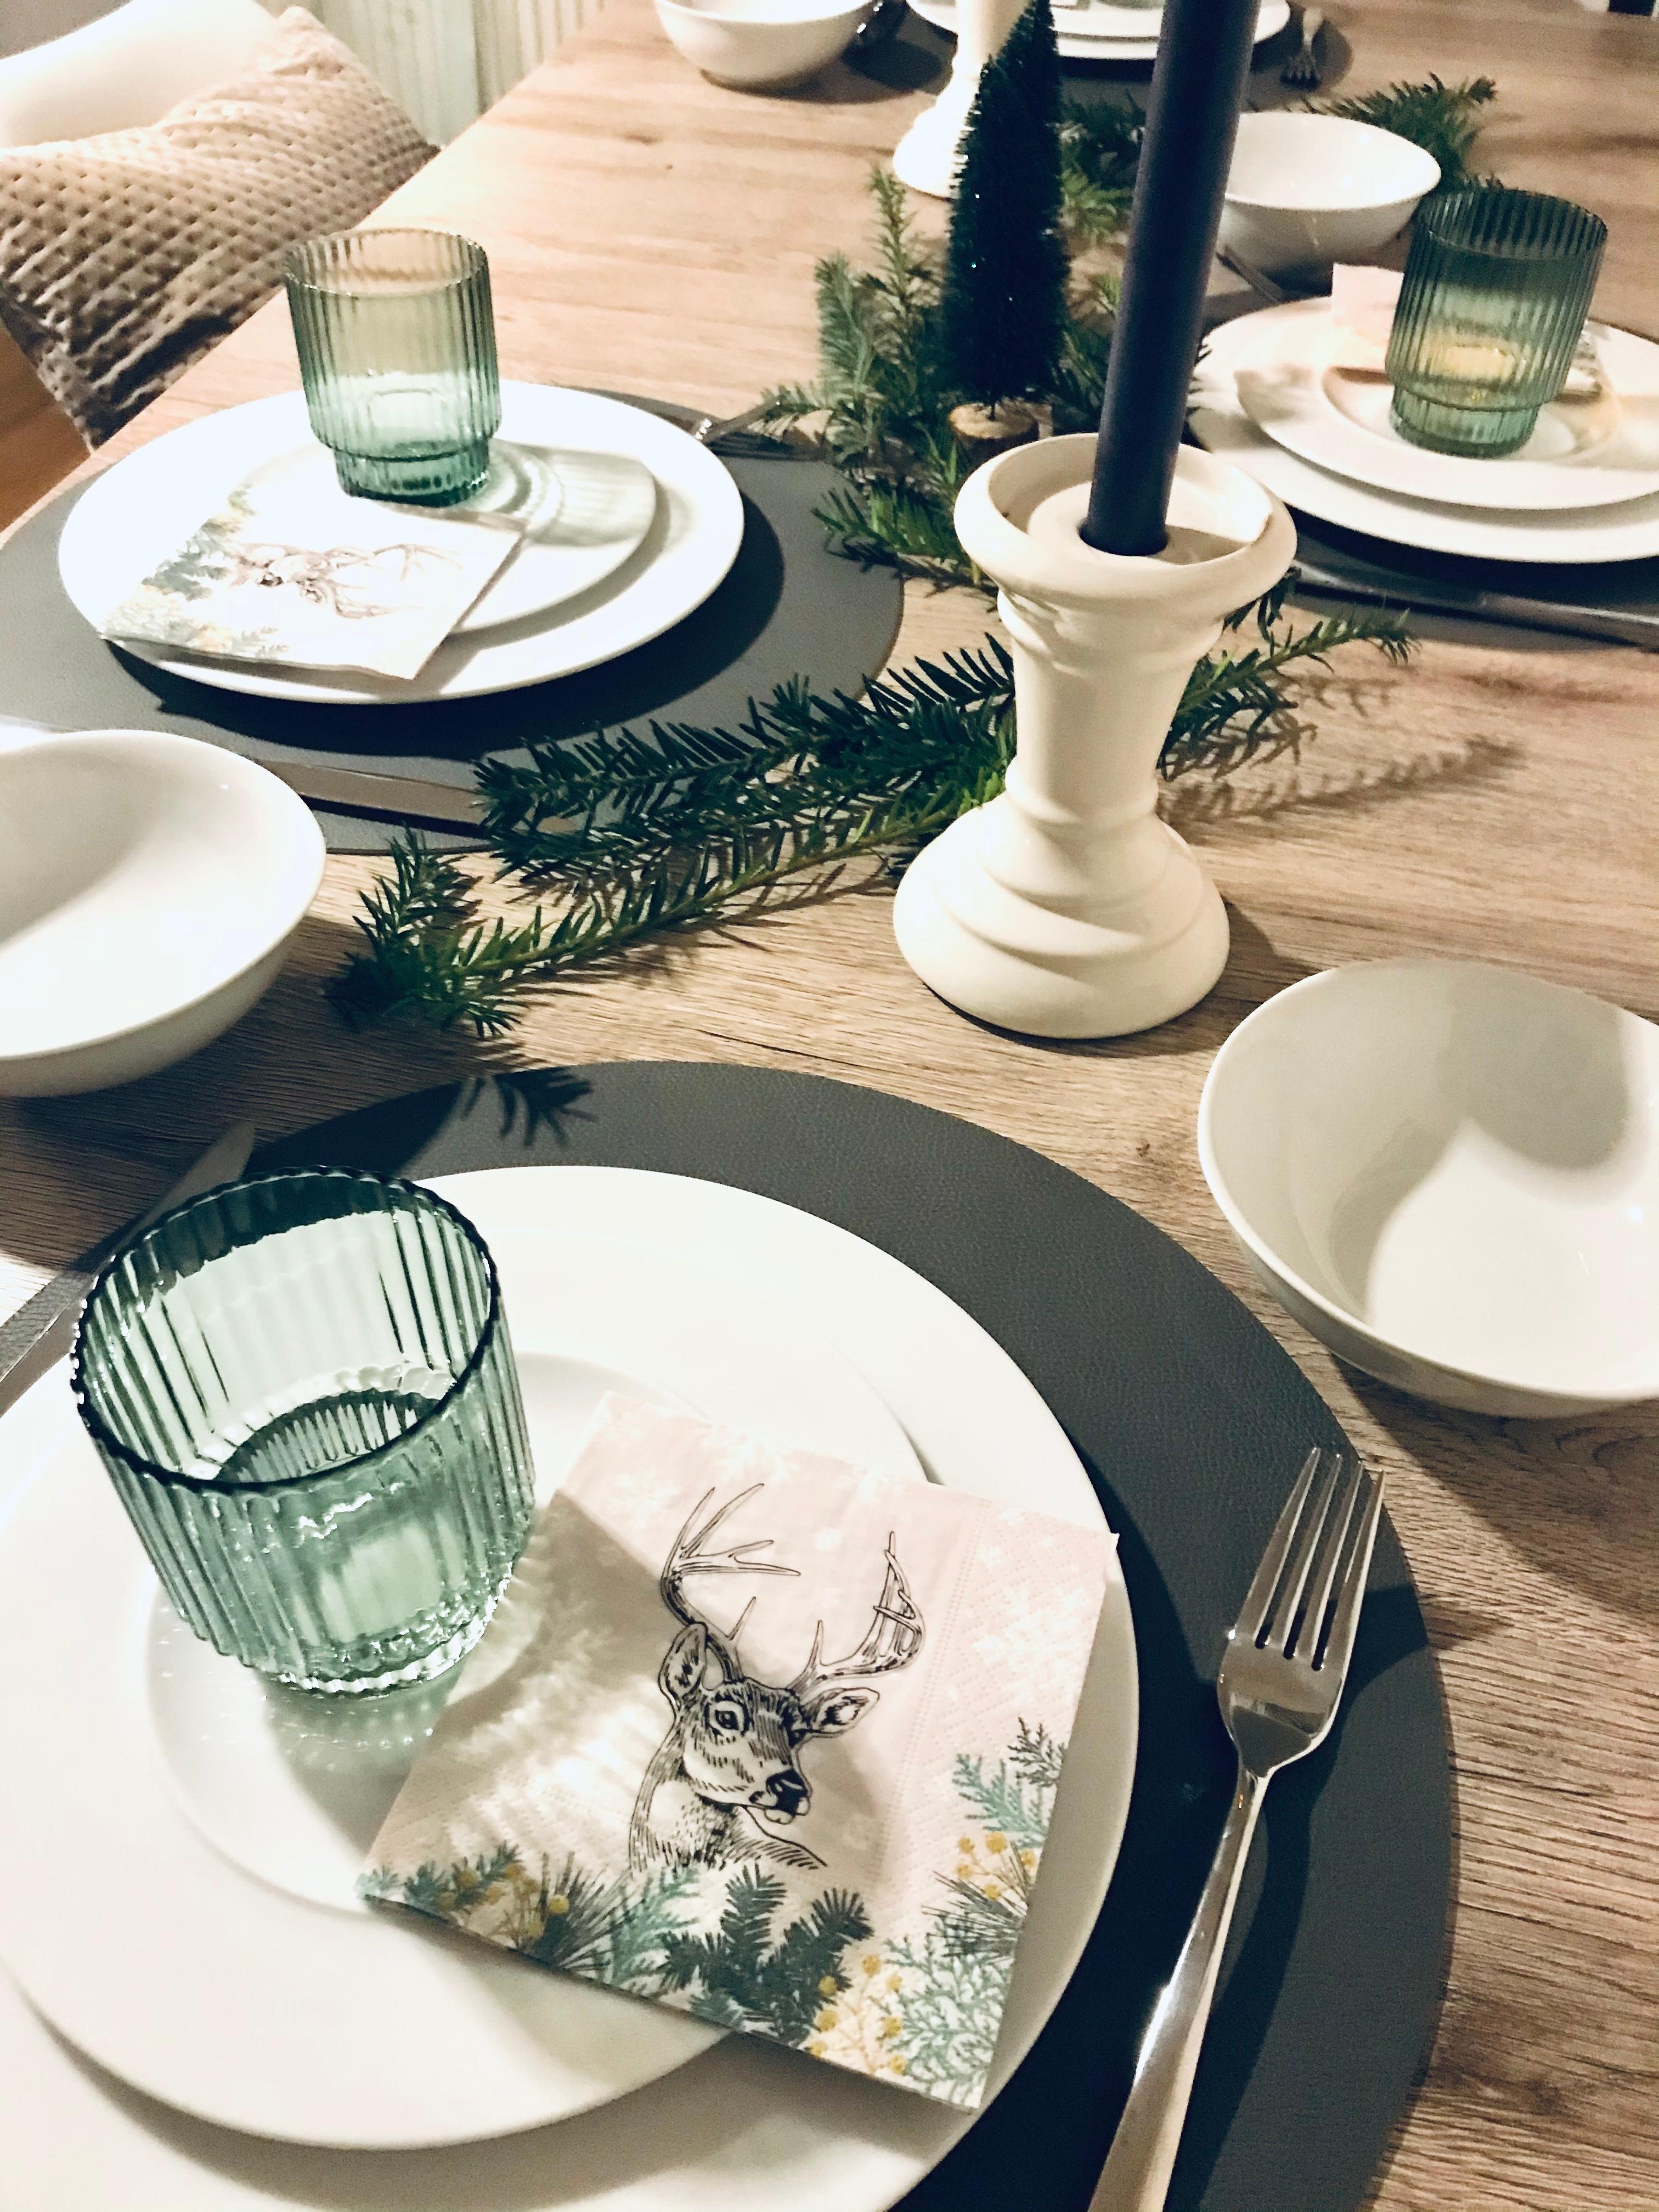 Unser Esstisch am Heiligabend 🤍
#kerzen #tannenzweige #tischdeko
gedeckter Tisch für 4🍽